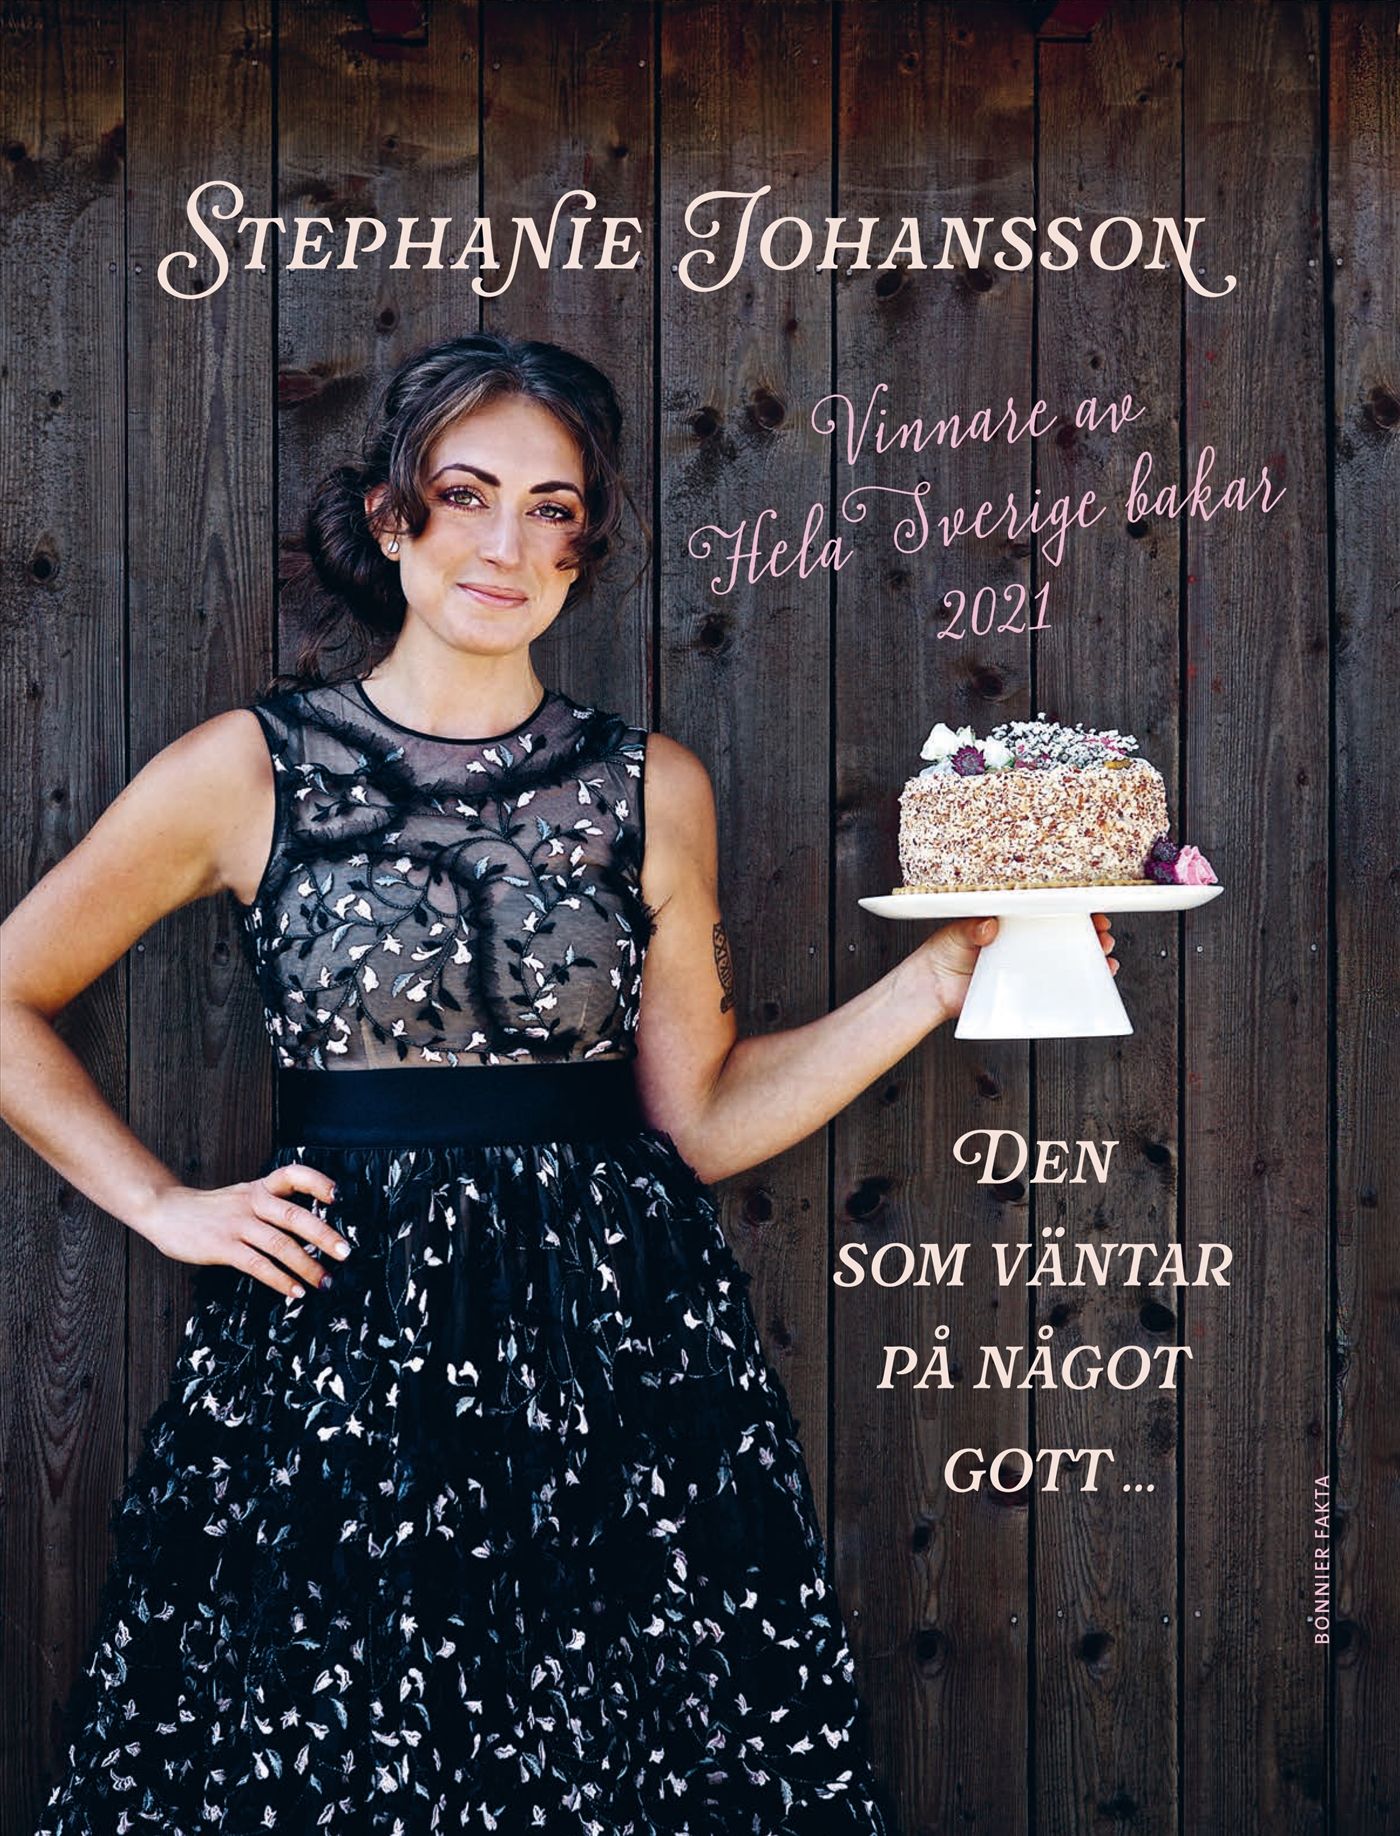 Den som väntar på något gott ..., e-bog af Stephanie Johansson